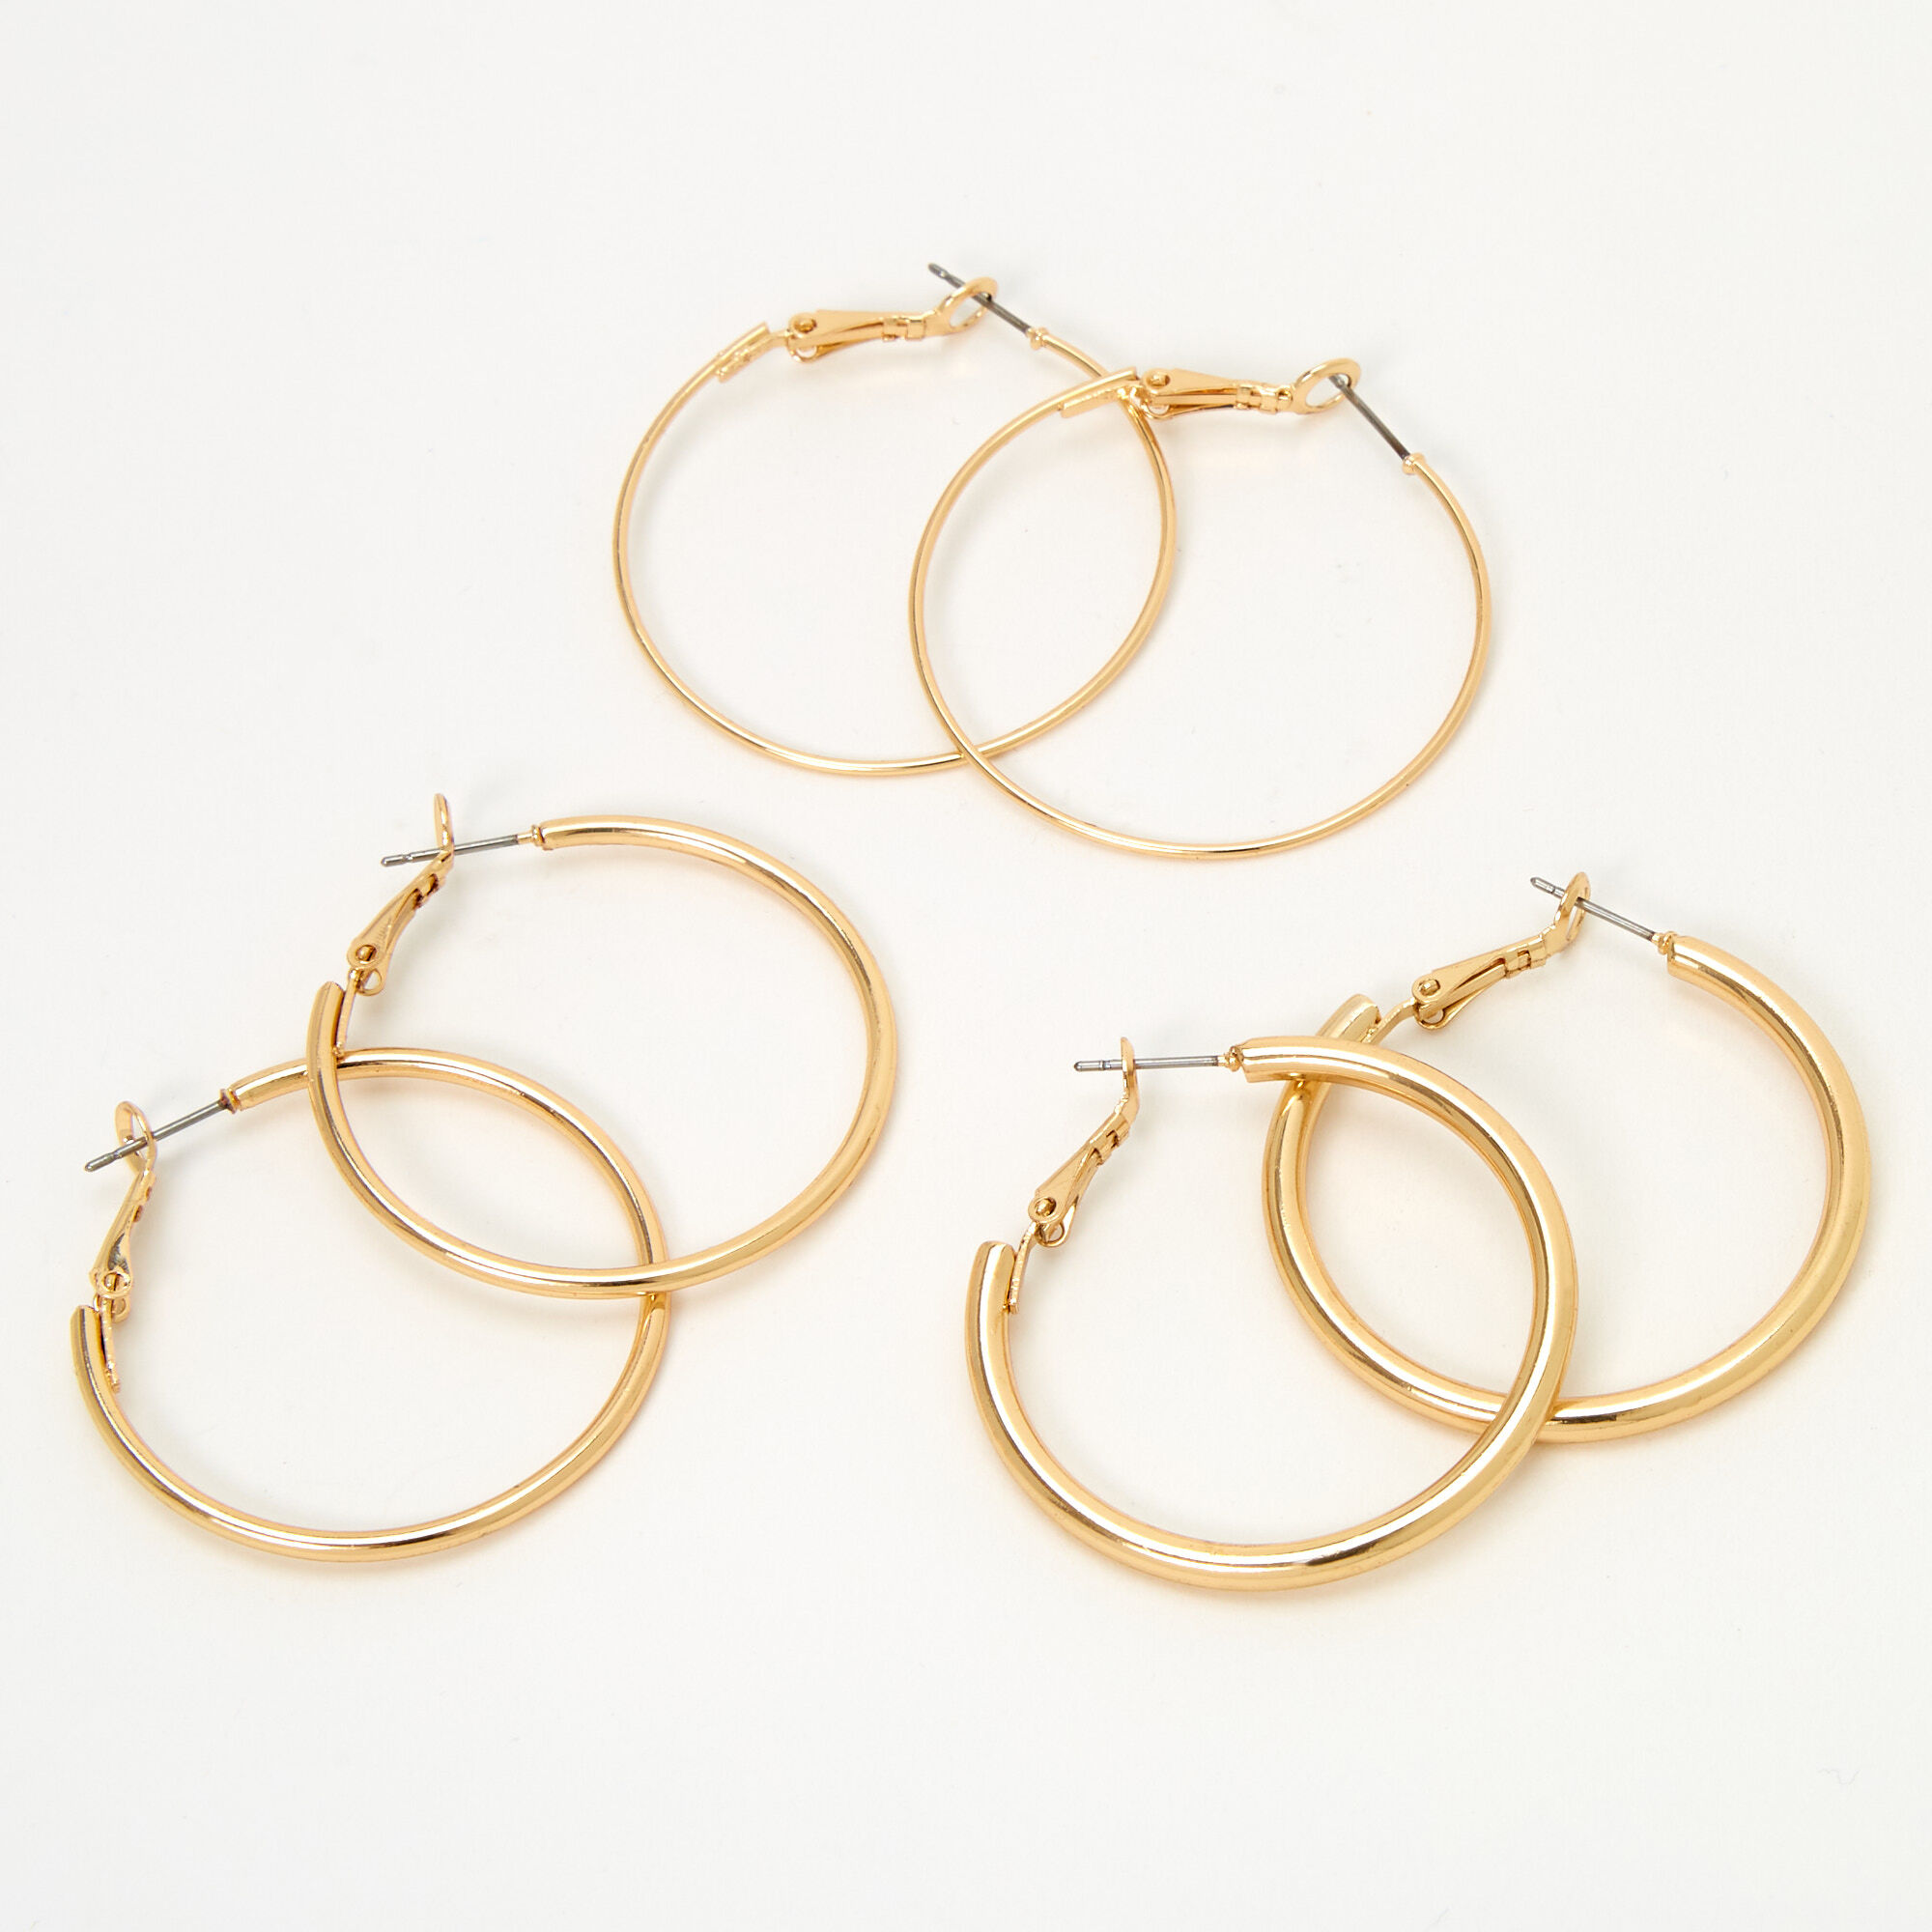 Moon Brass Gold Hoop Earrings at Rs 245/pair in Jaipur | ID: 23469303048